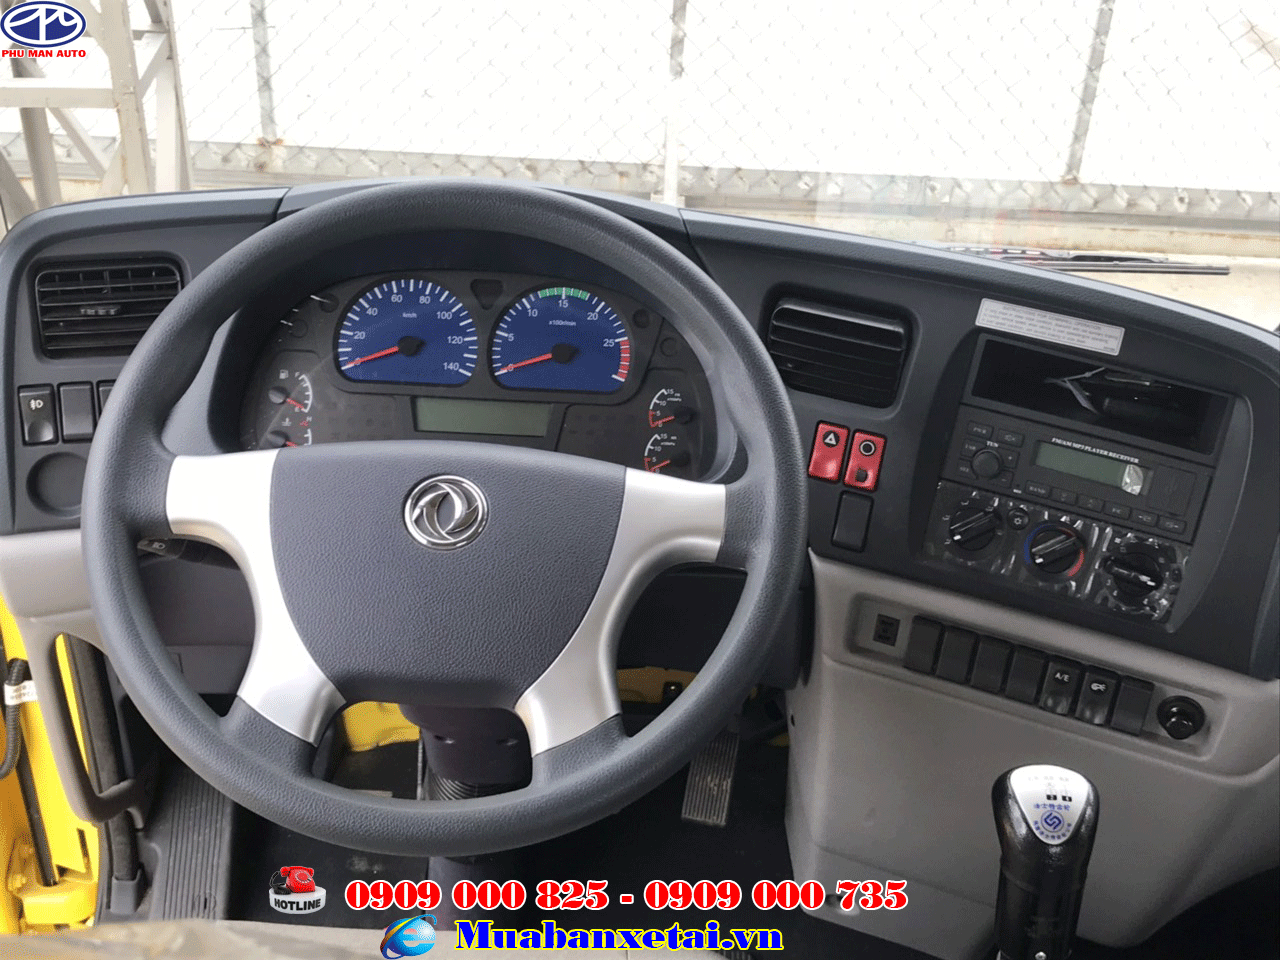 JRD 2019 - Rinh xe Dongfeng B180 với giá cực sốc